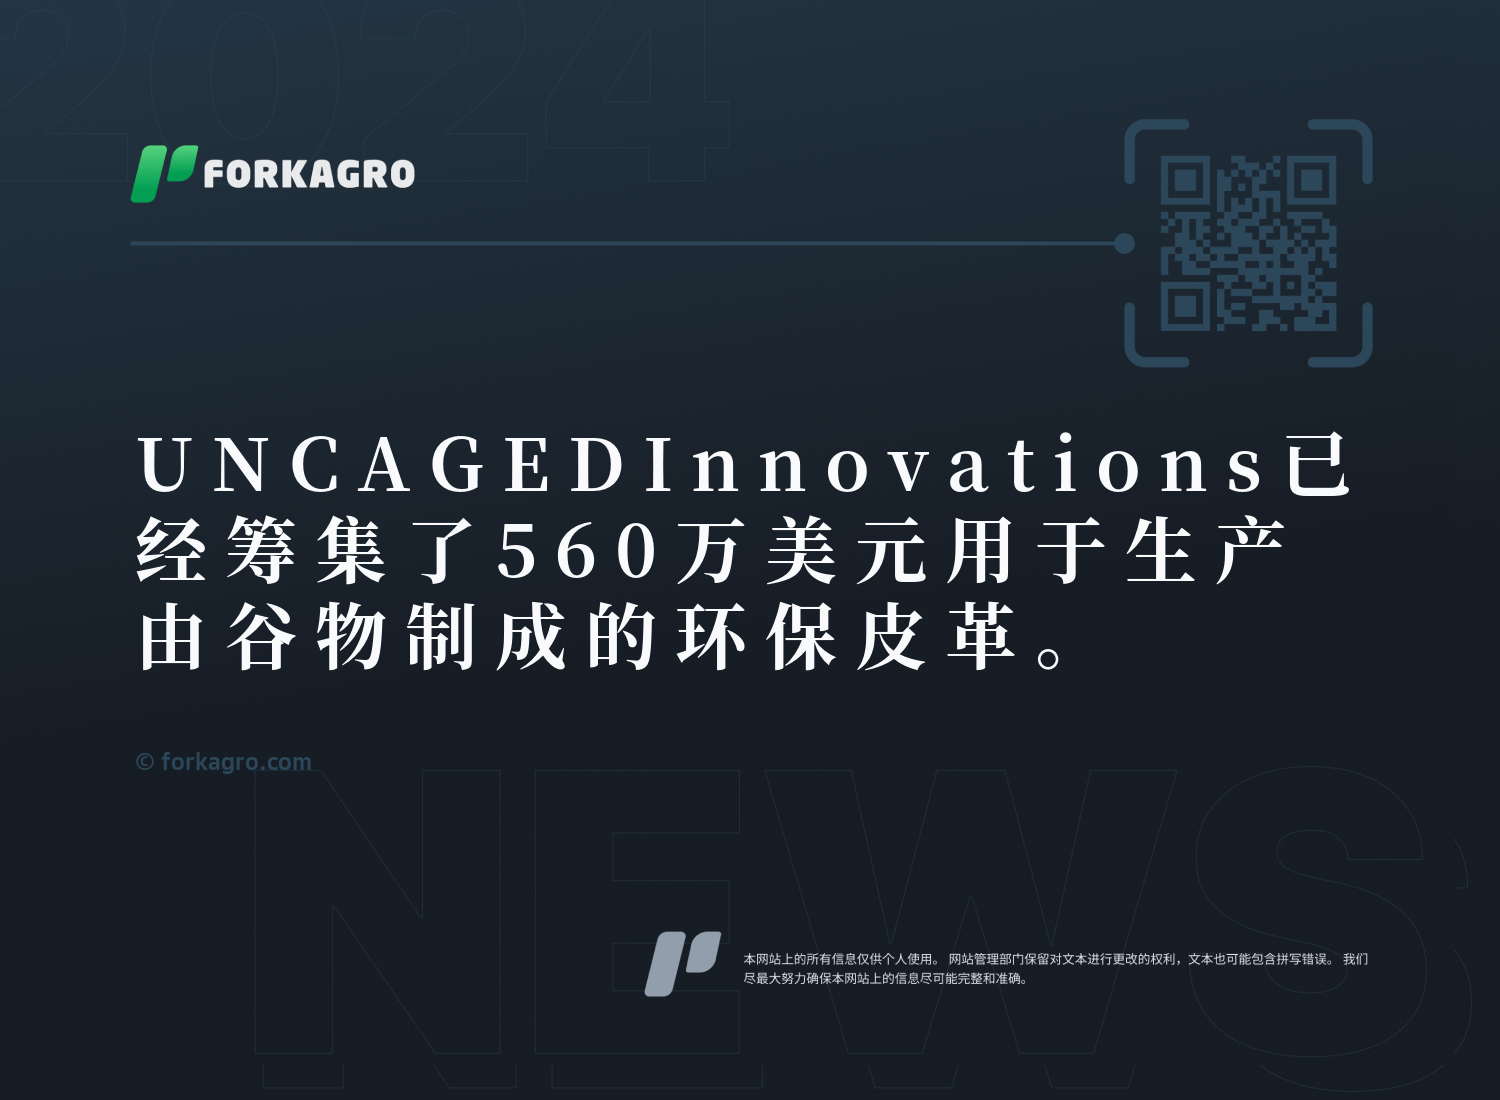 UNCAGED Innovations已经筹集了560万美元用于生产由谷物制成的环保皮革。